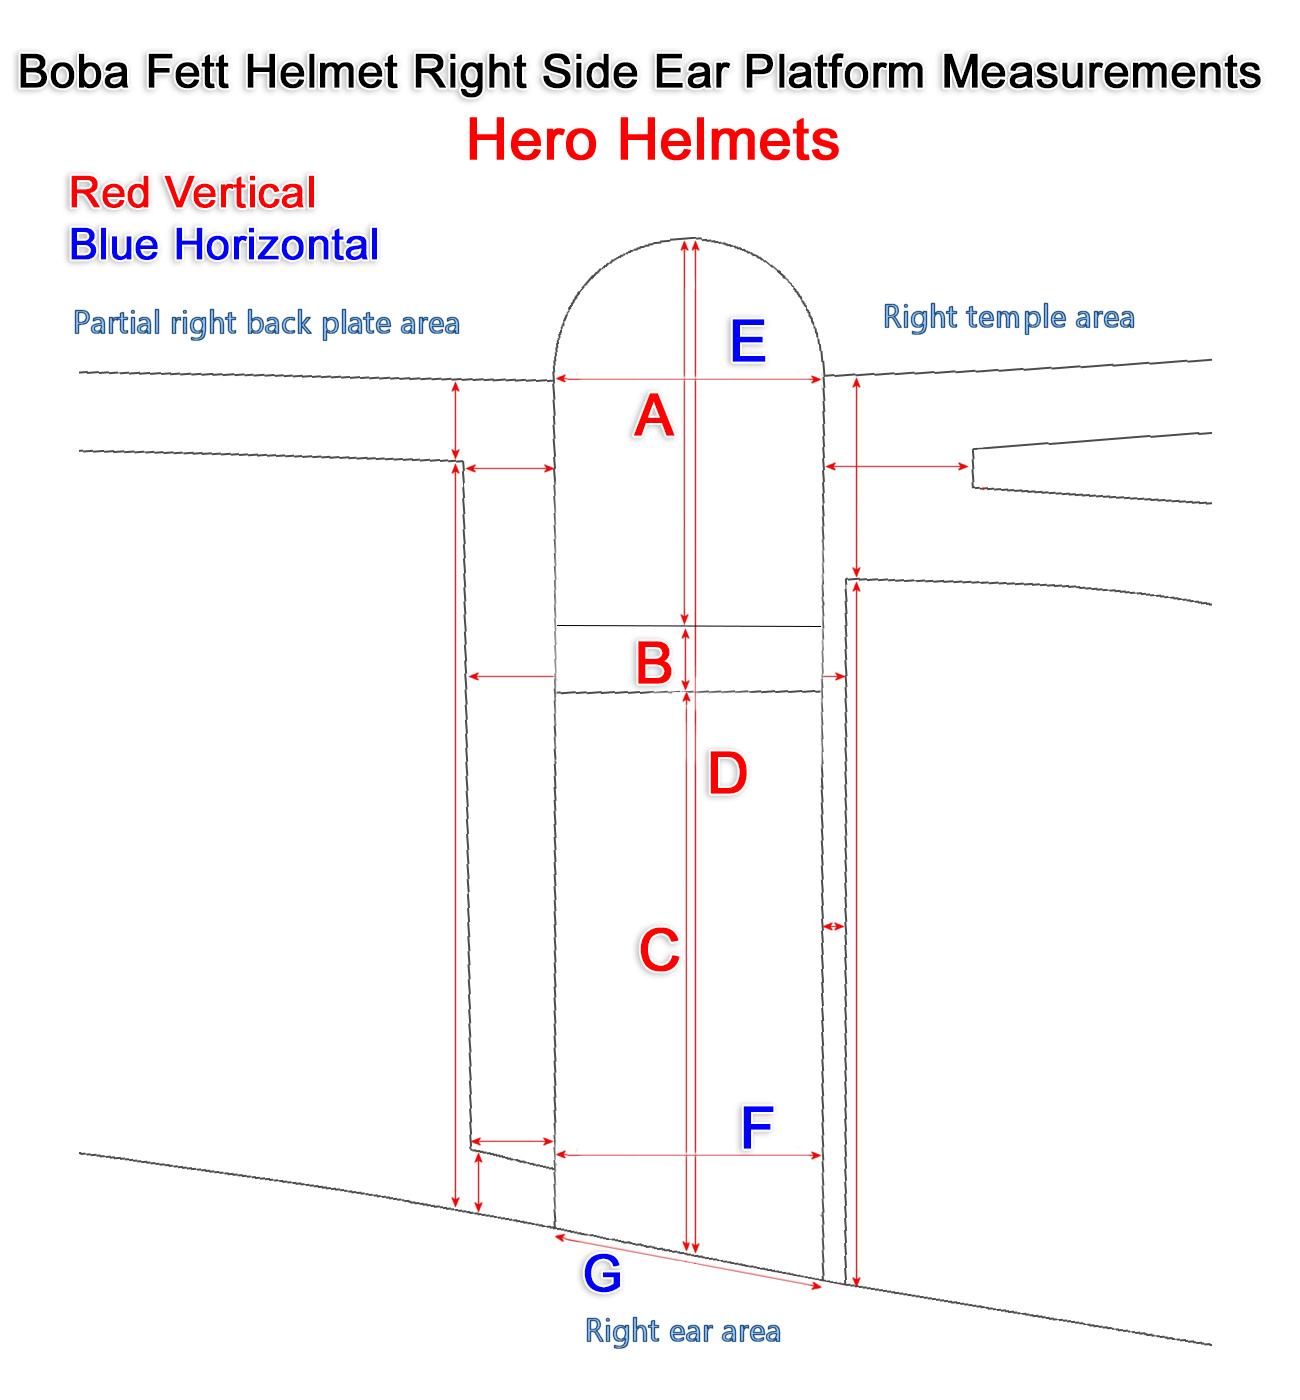 Boba Fett Hero Helmet Right Side Measurements.jpg